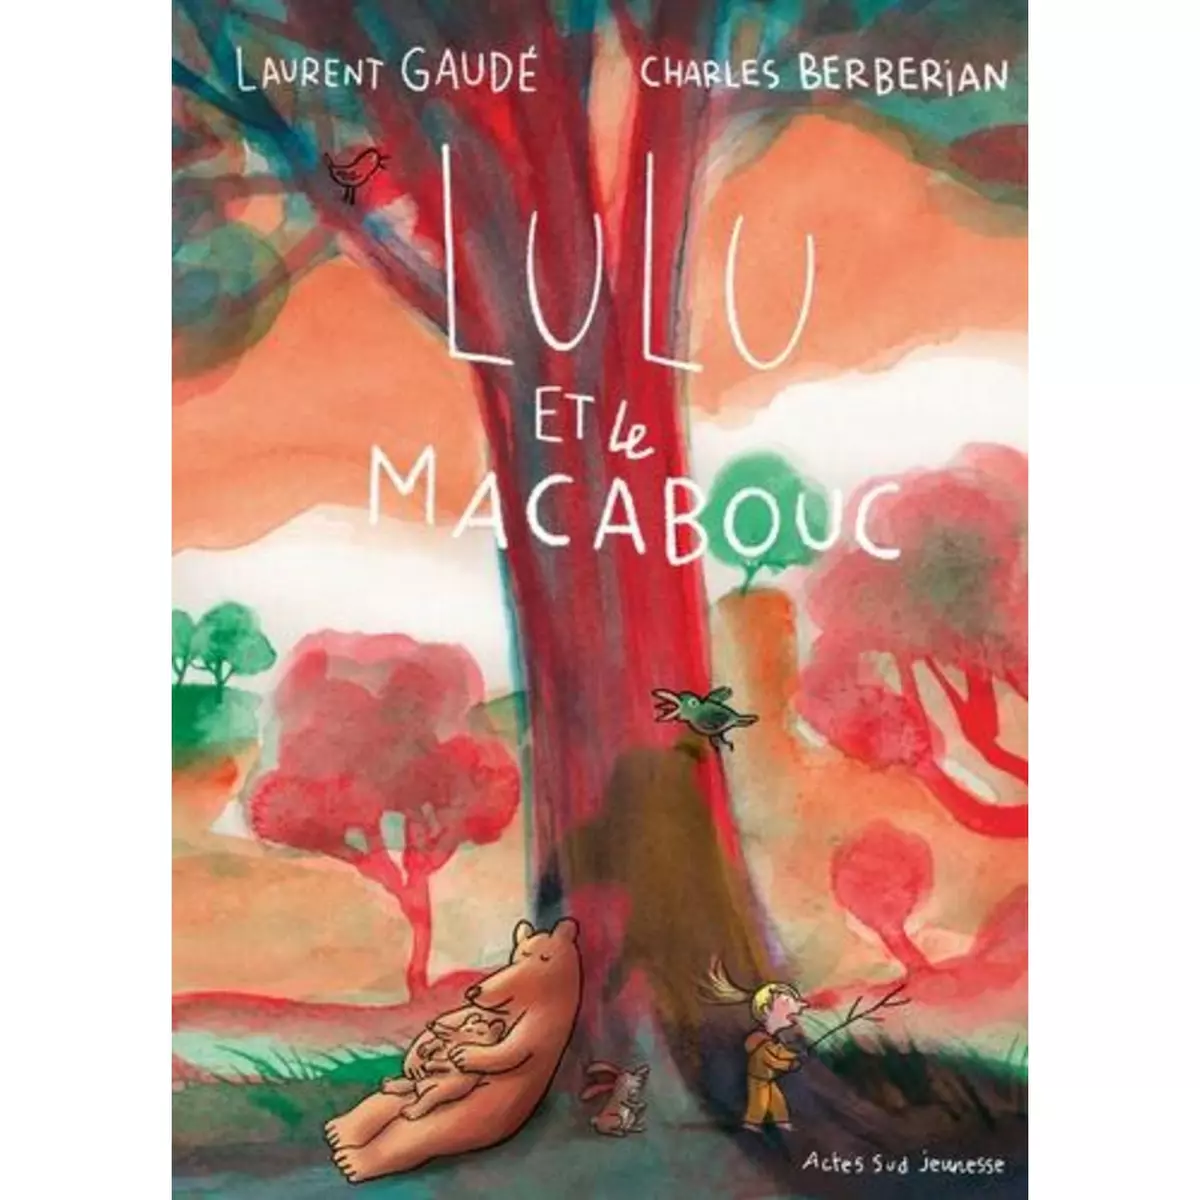  LULU ET LE MACABOUC, Gaudé Laurent